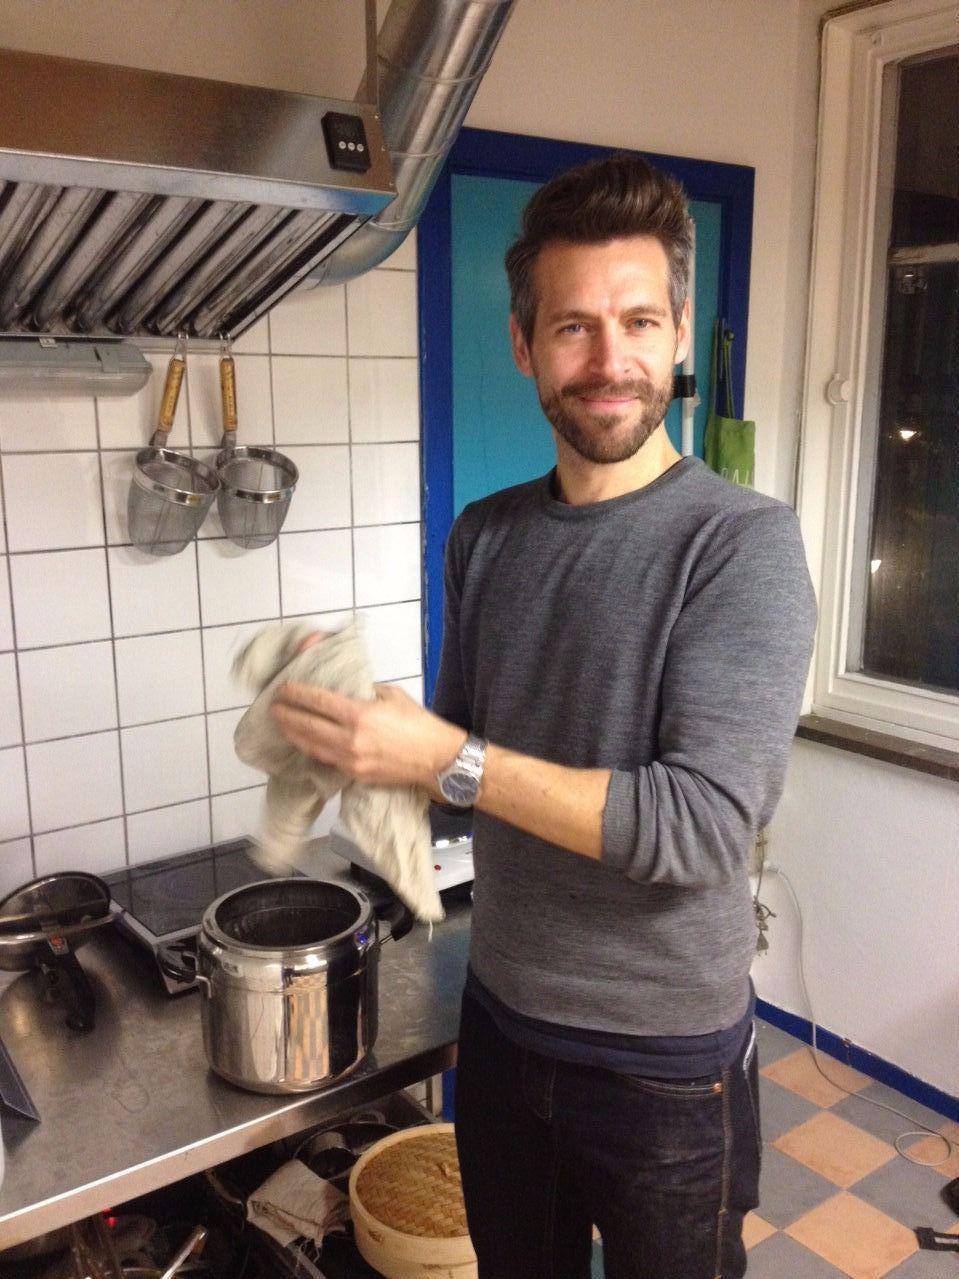 EN HØNE Å PLUKKE: David Quist kommer til Oslo for å lage hønseramen. Foto: Hrimnir Ramen